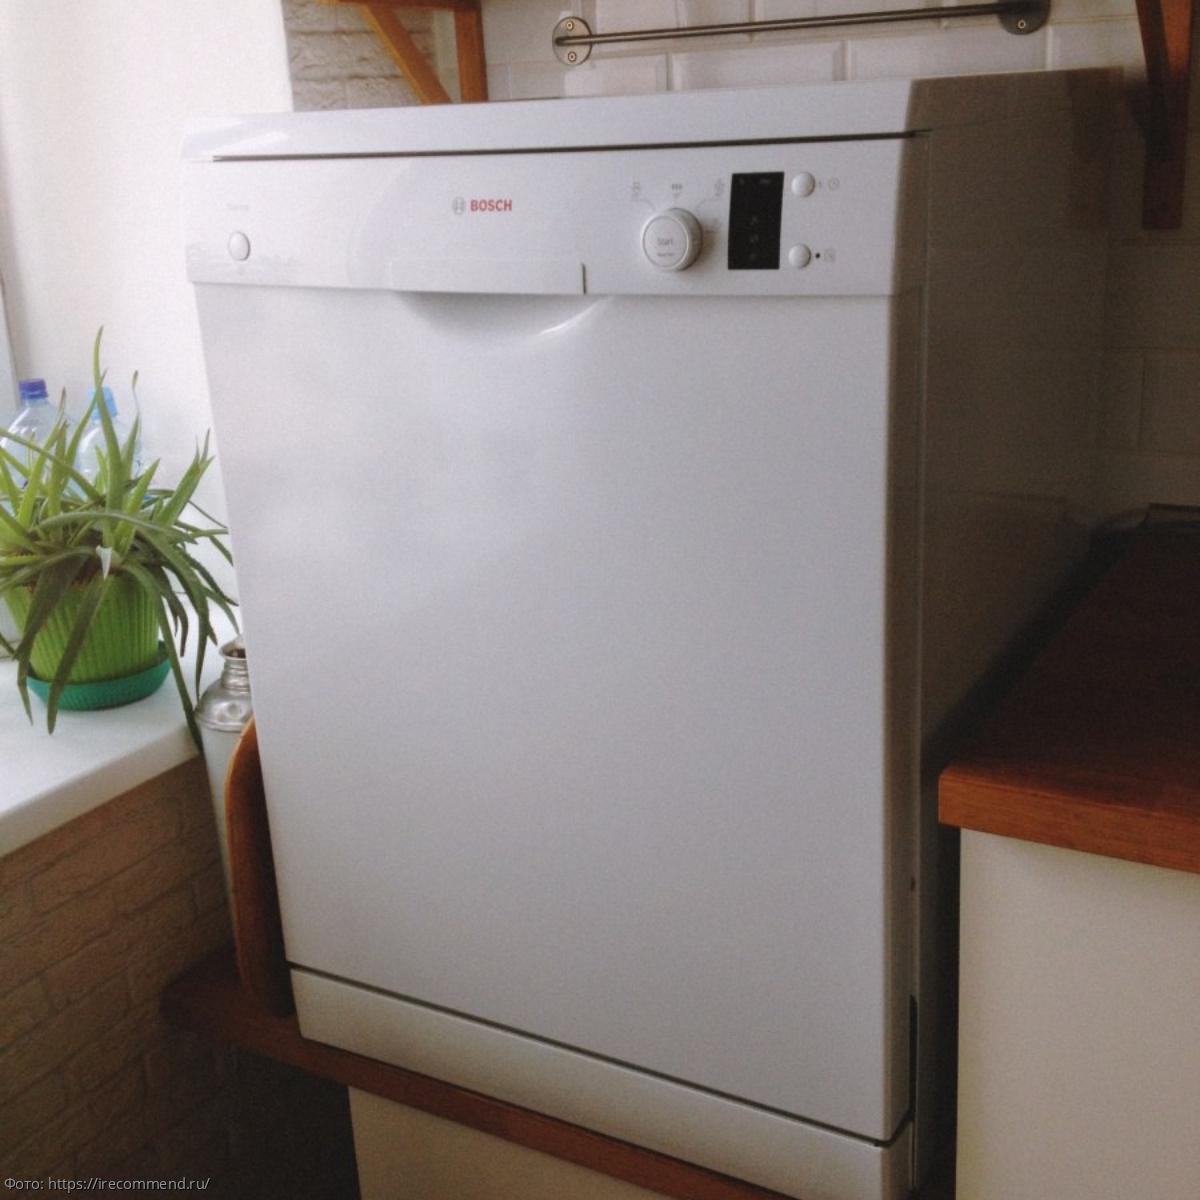 Рейтинг посудомоечных машин Bosch шириной 60 см